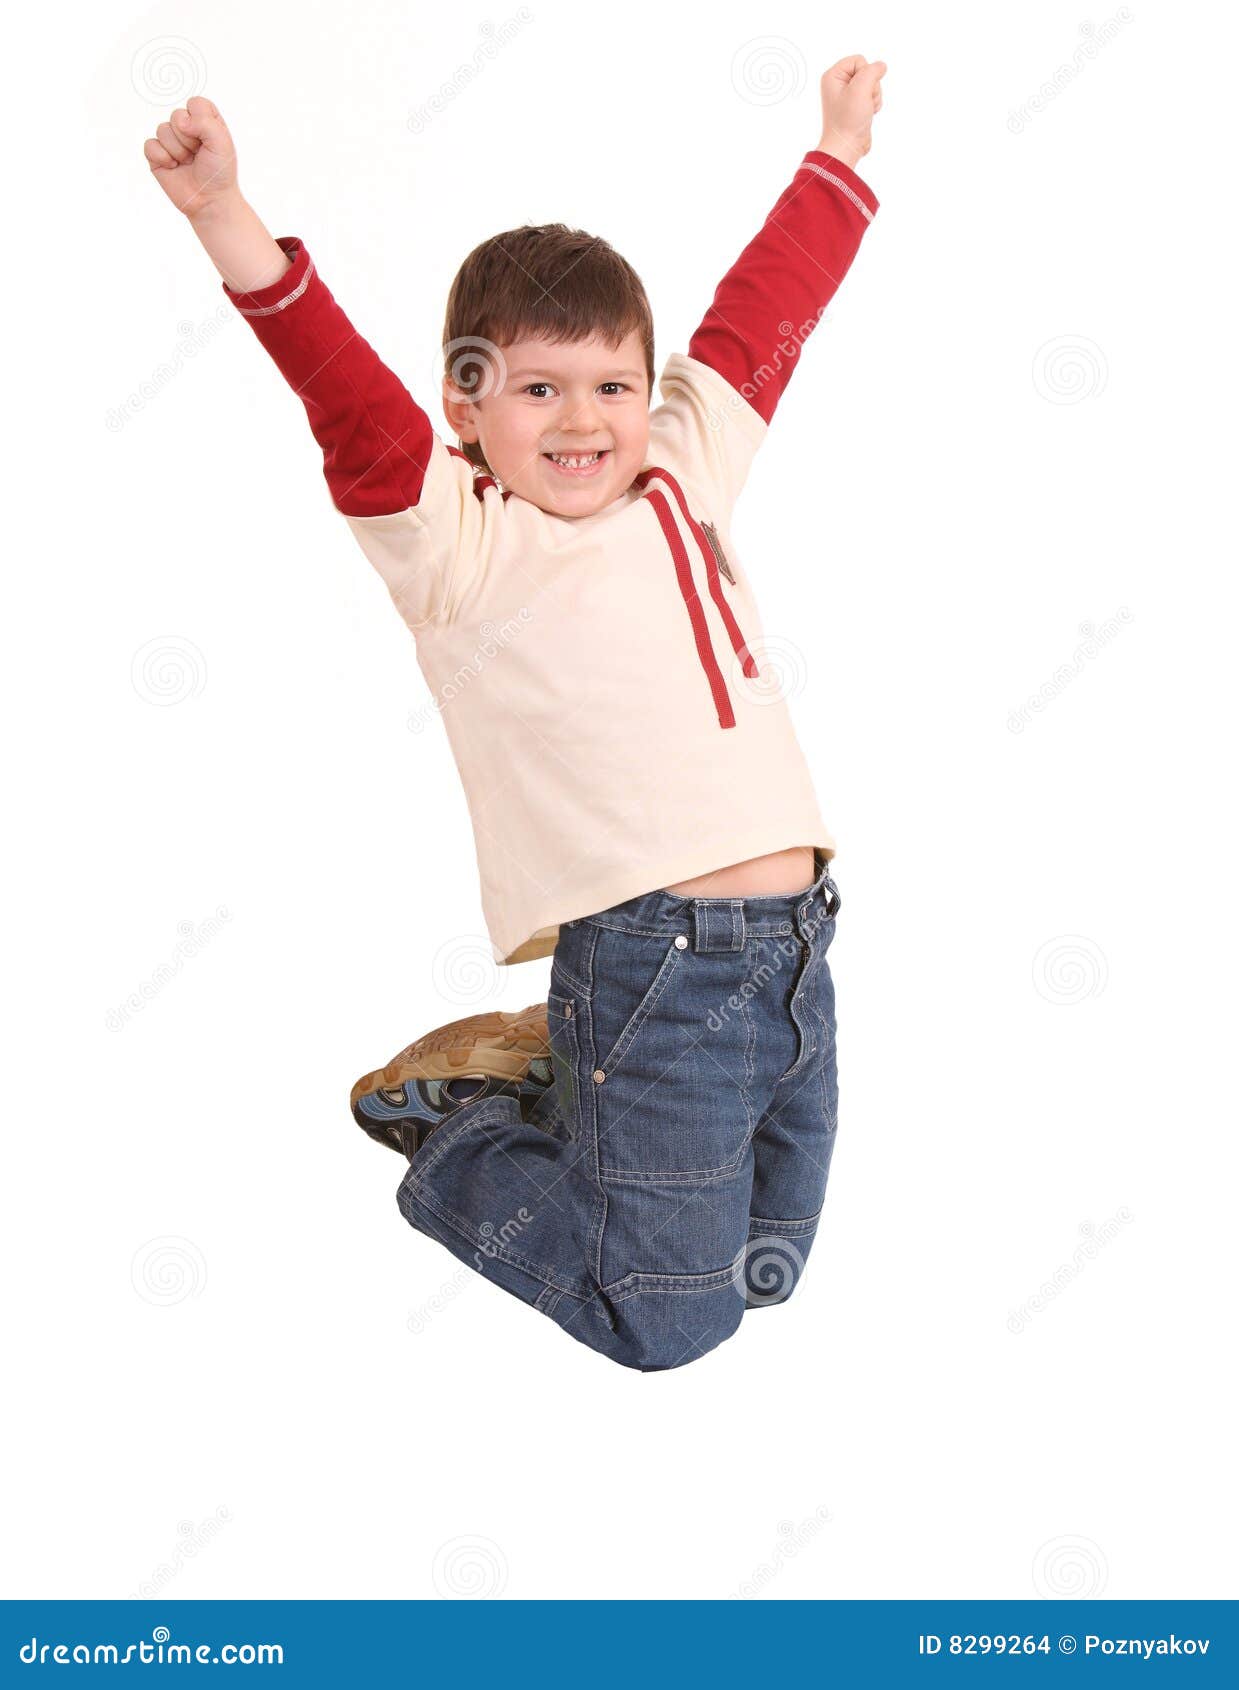 fun boy in jeans high jump.